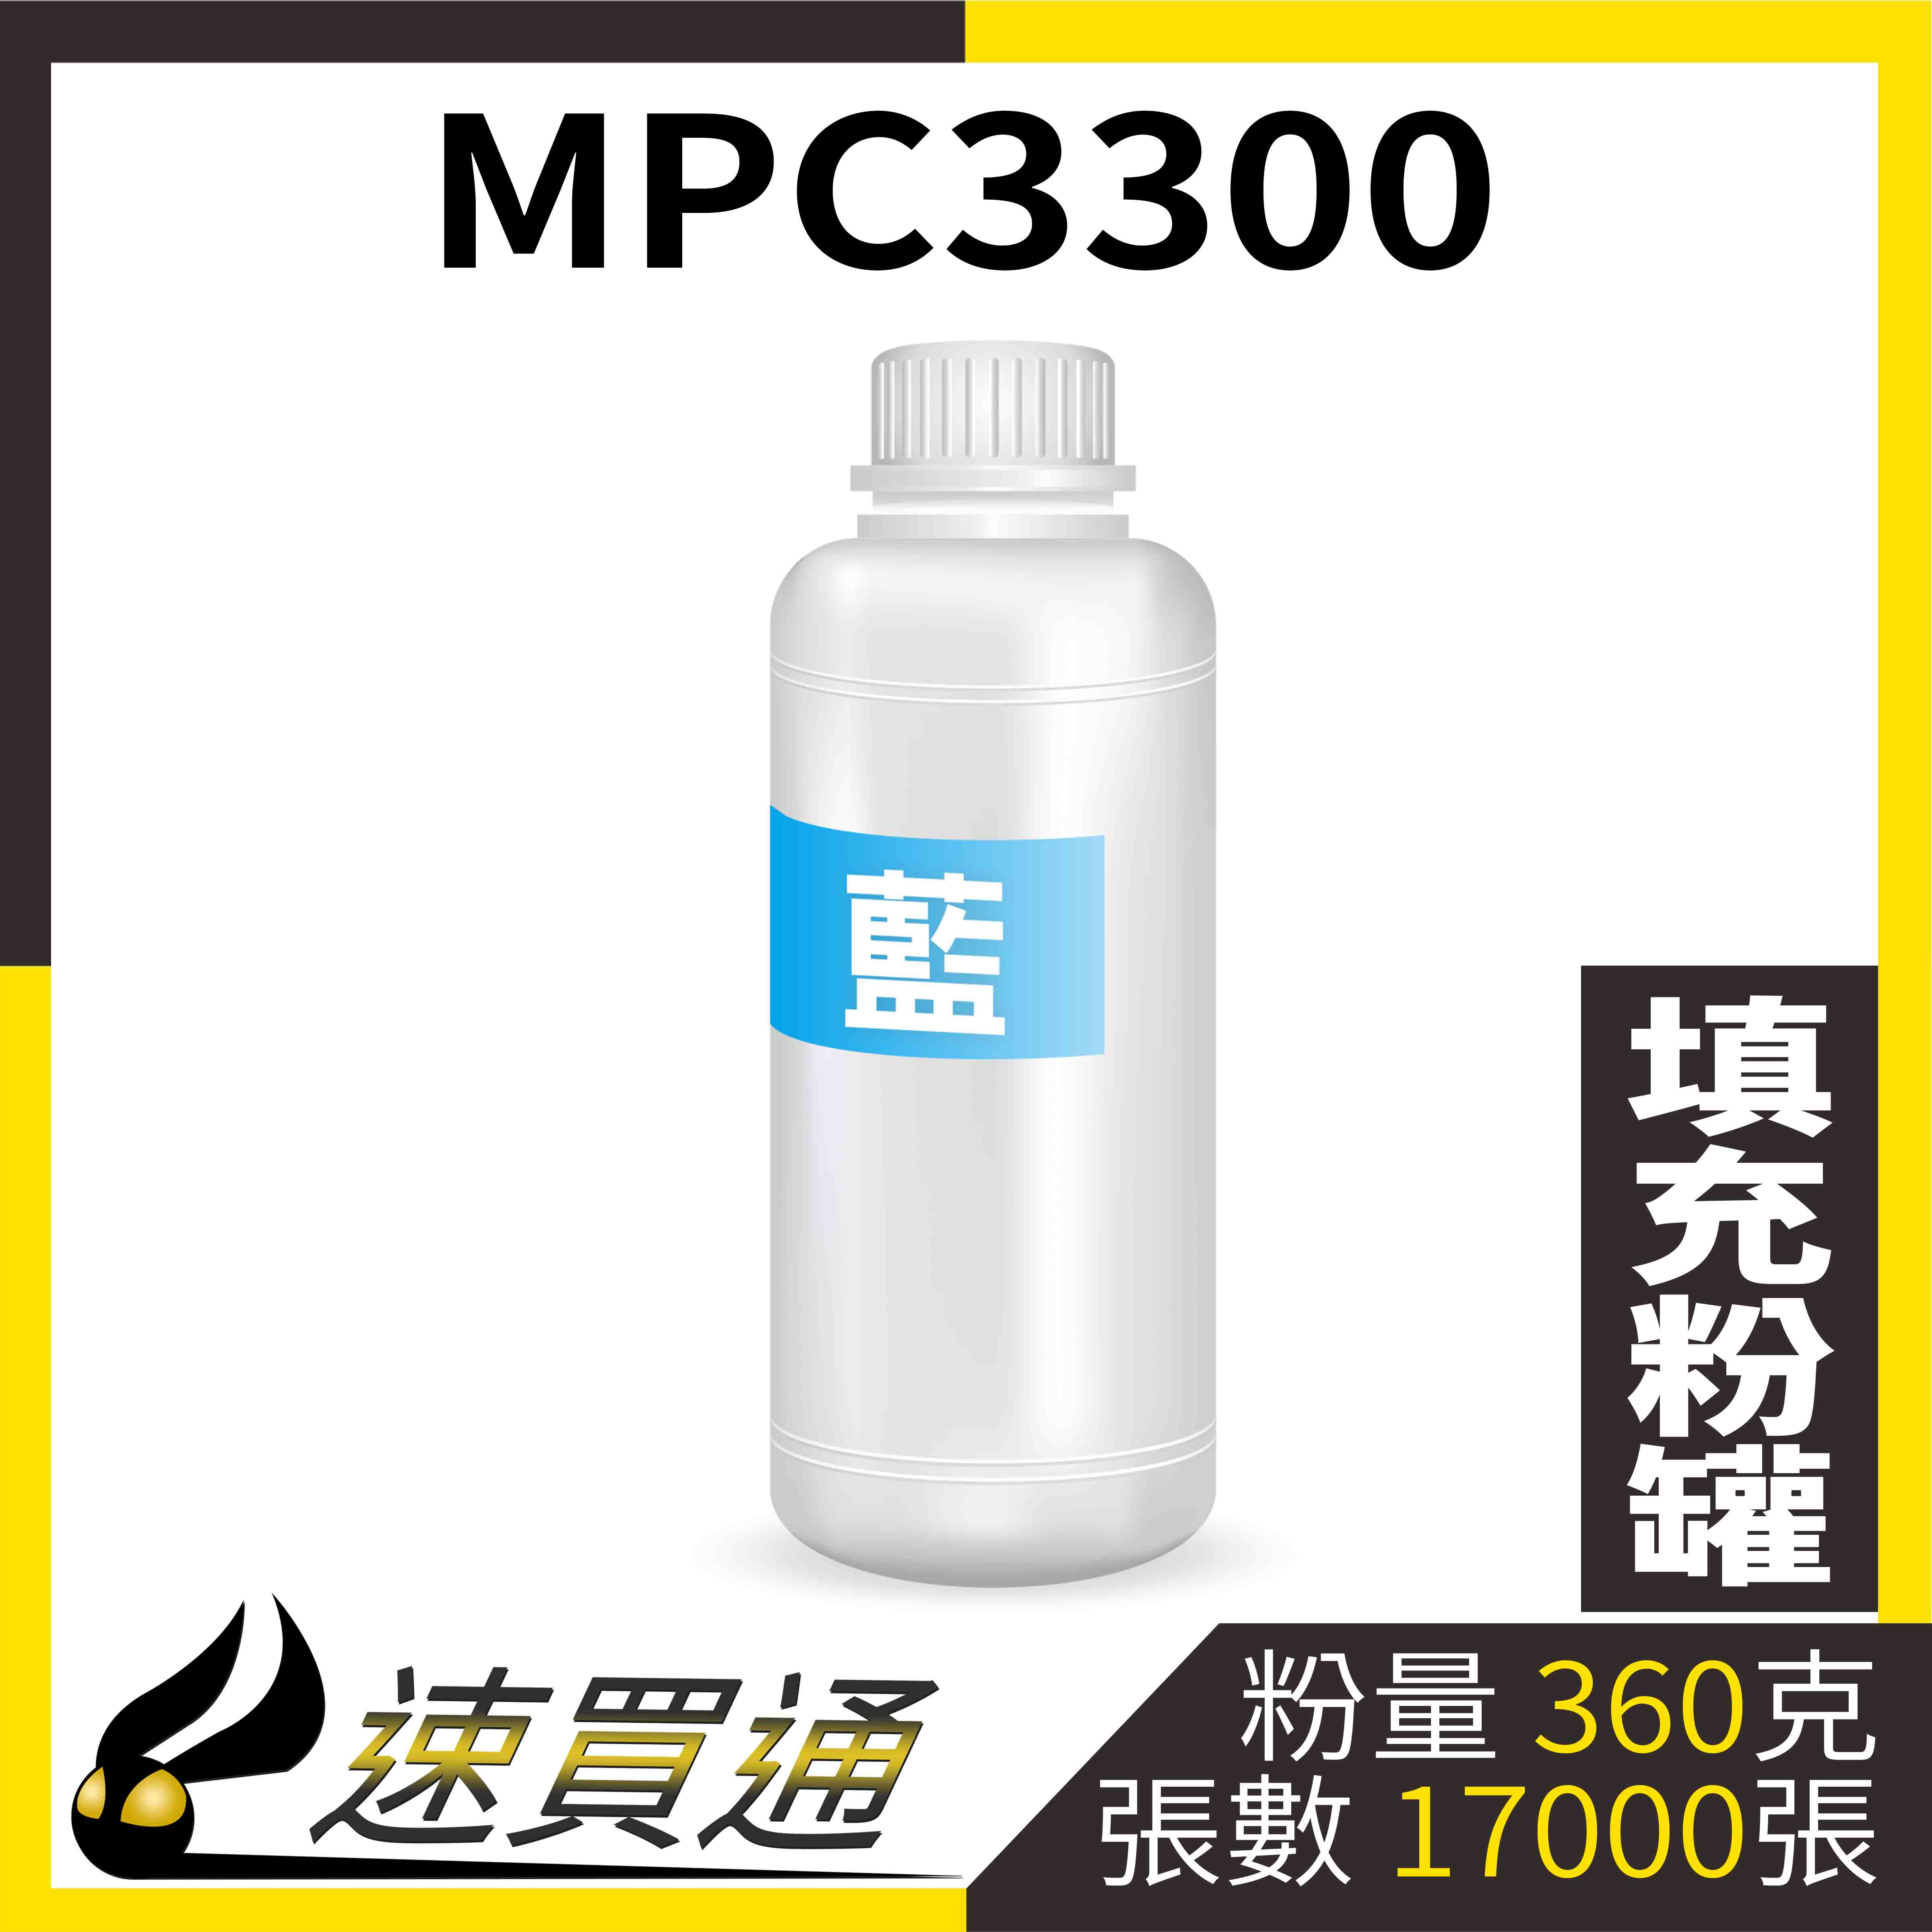 【速買通】RICOH MPC3300 藍 填充式碳粉罐